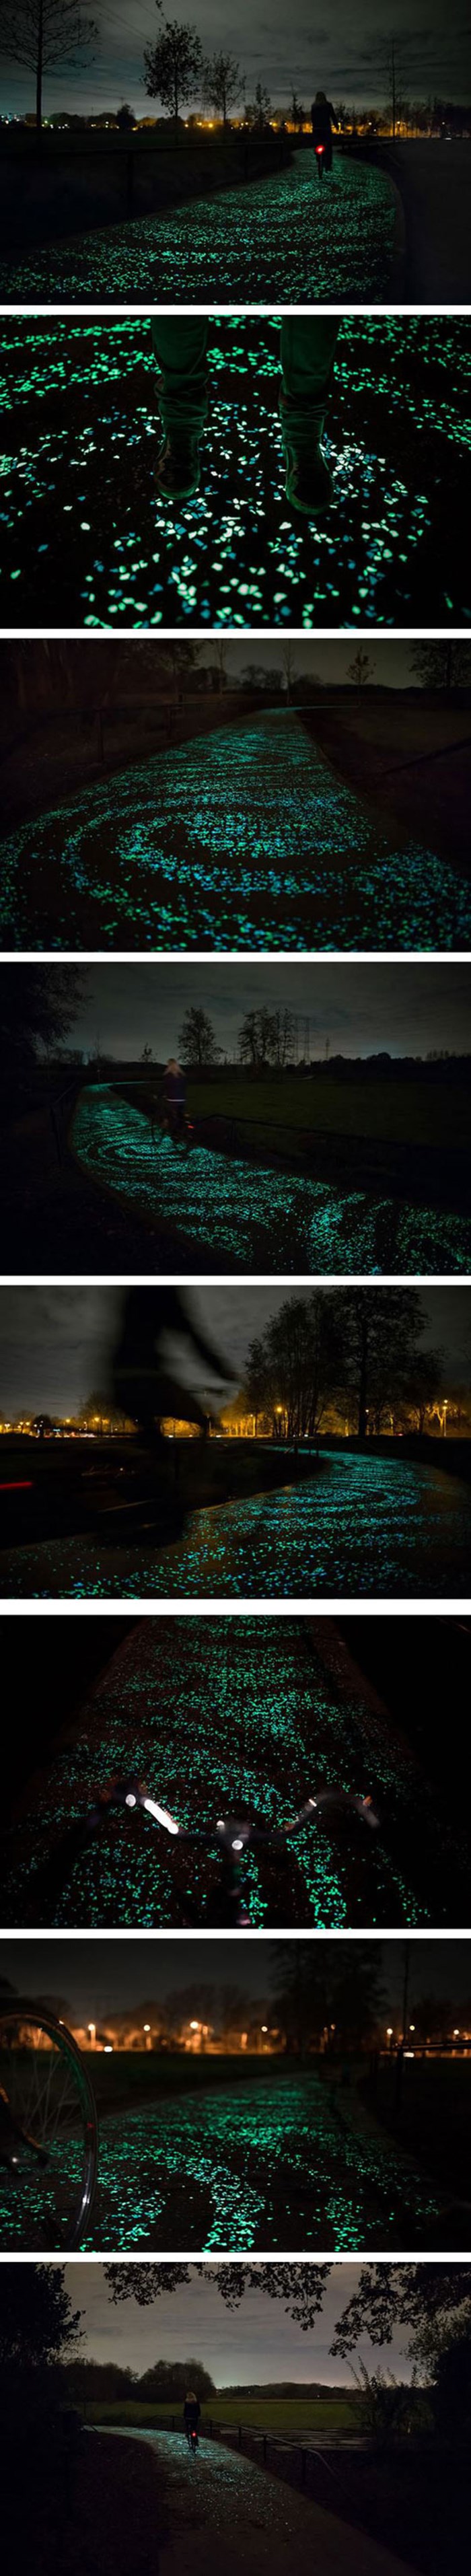 Biciklistička staza inspirirana "Zvjezdanom noći"  nalazi se u Nizozemskoj 